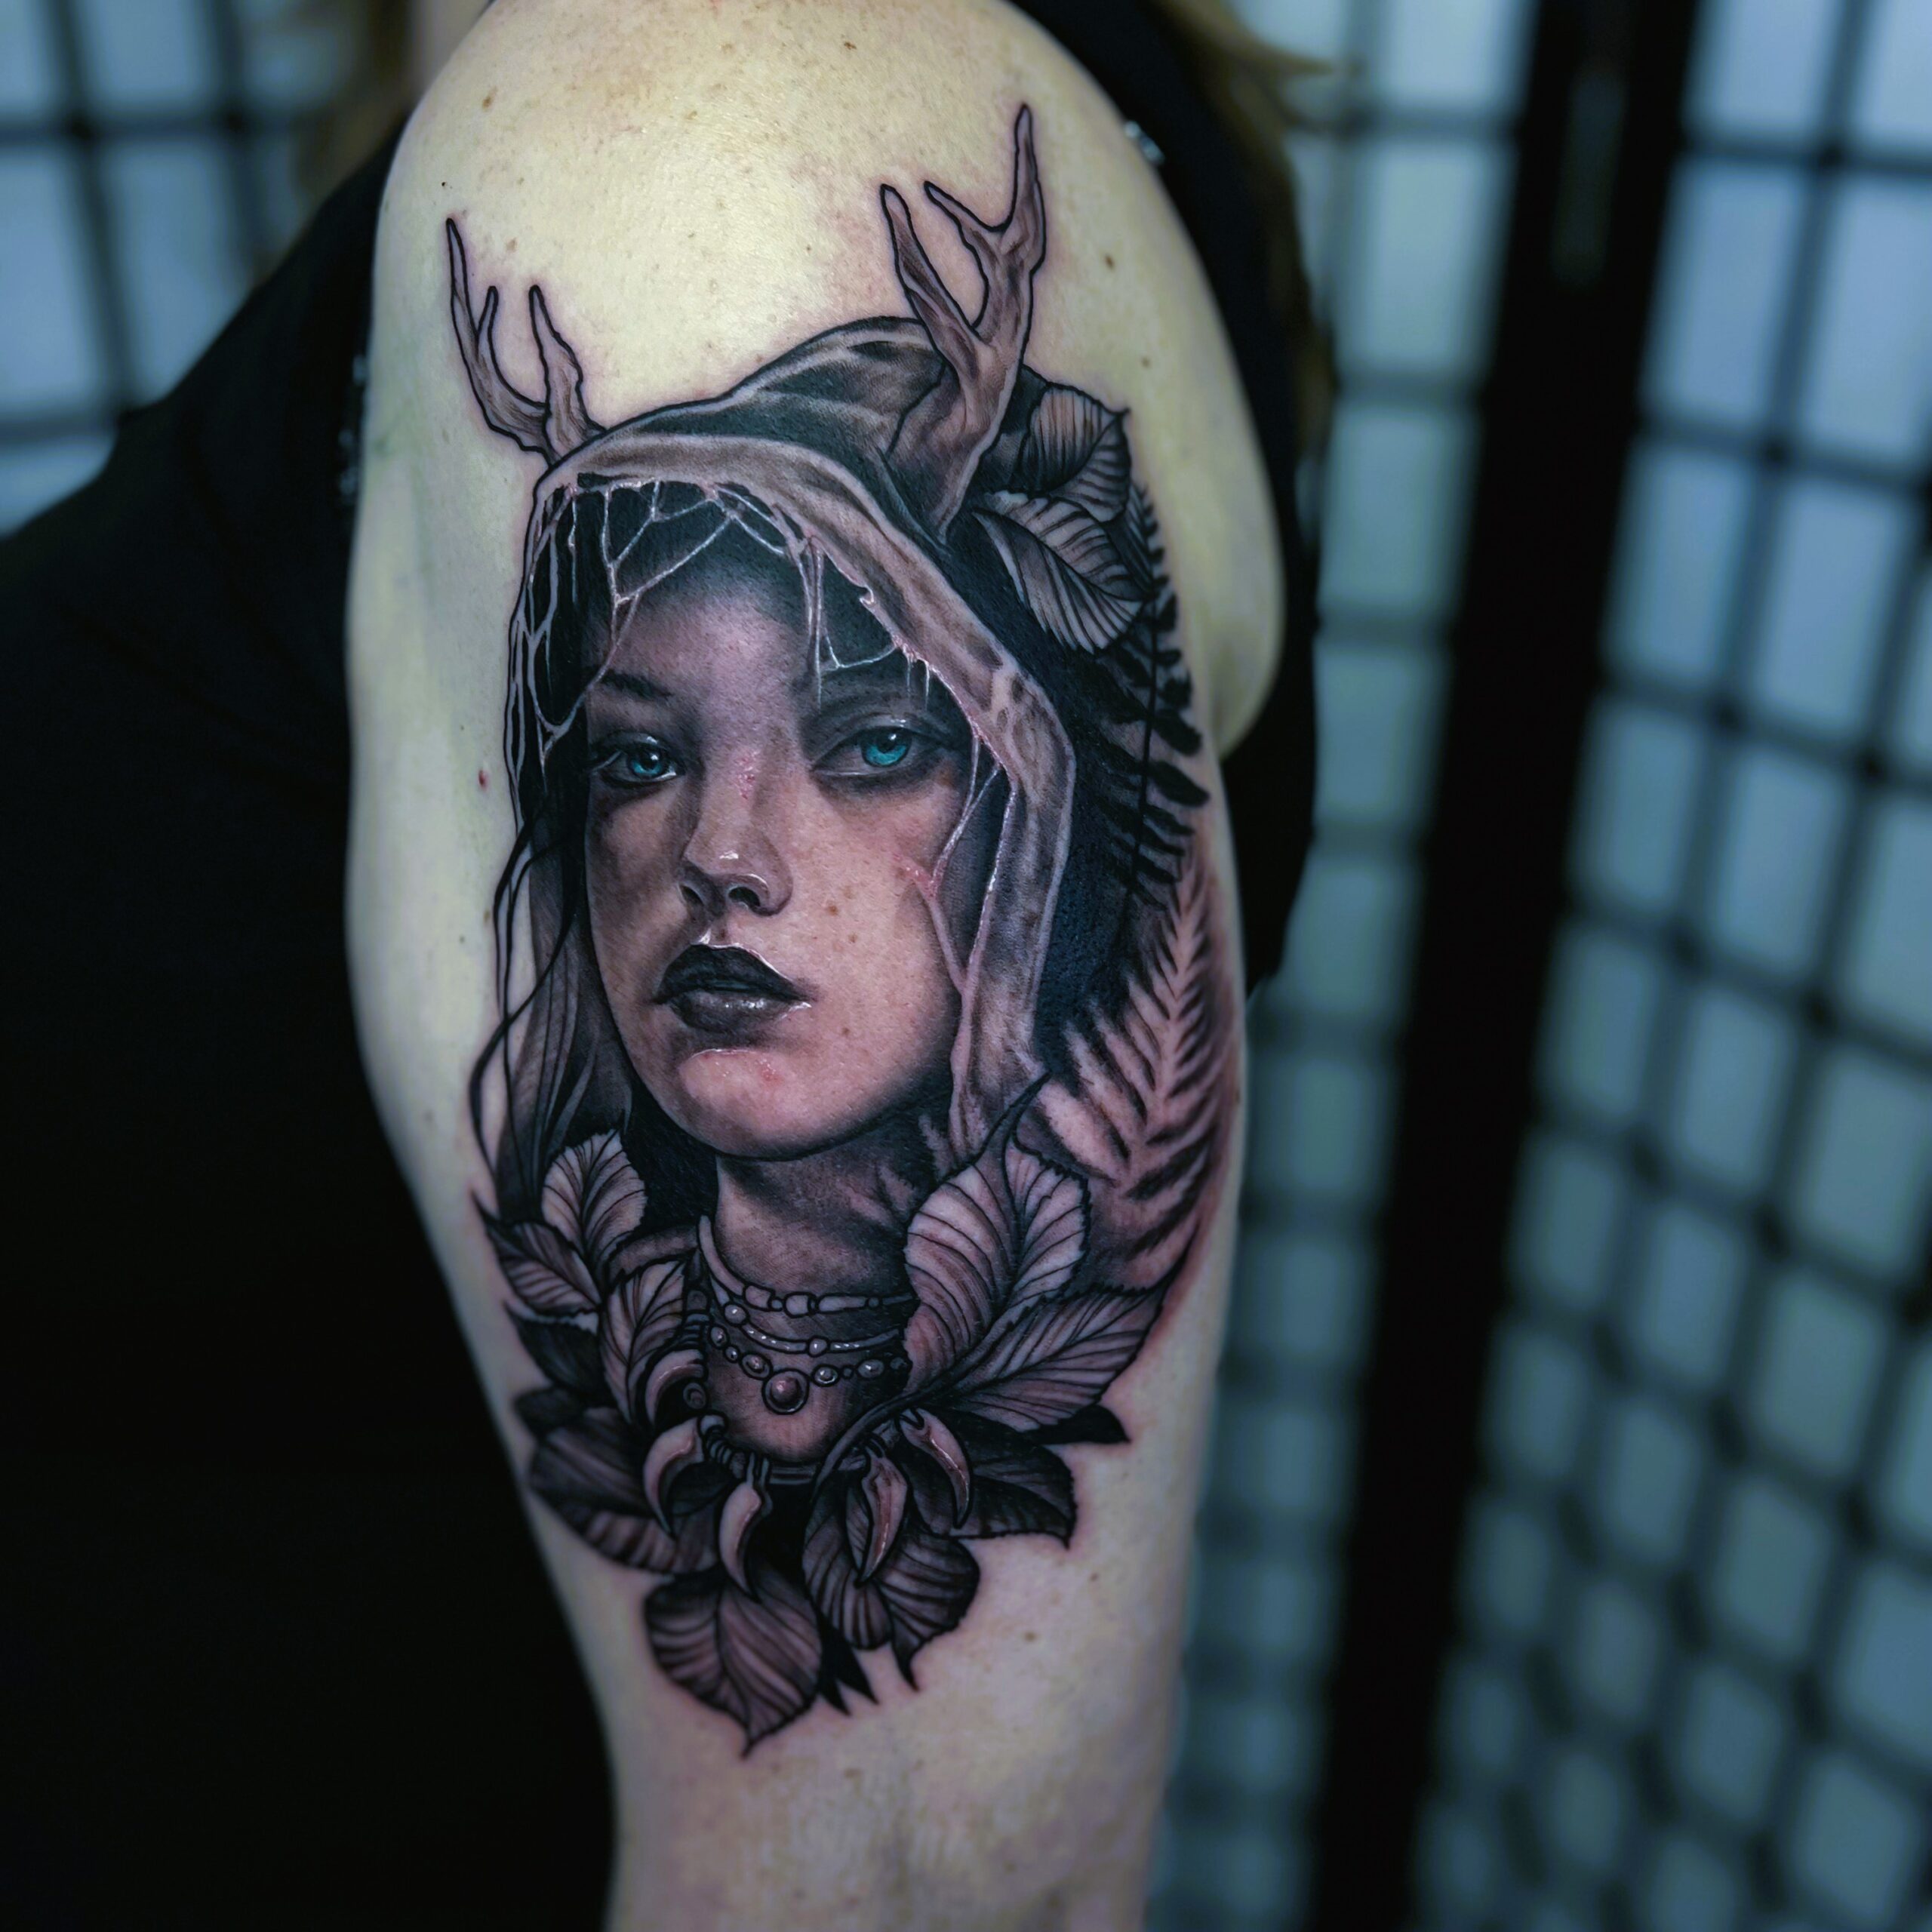 Wild woman tattoo done by Tattoos by Rafa at Buena Vida Tattoo